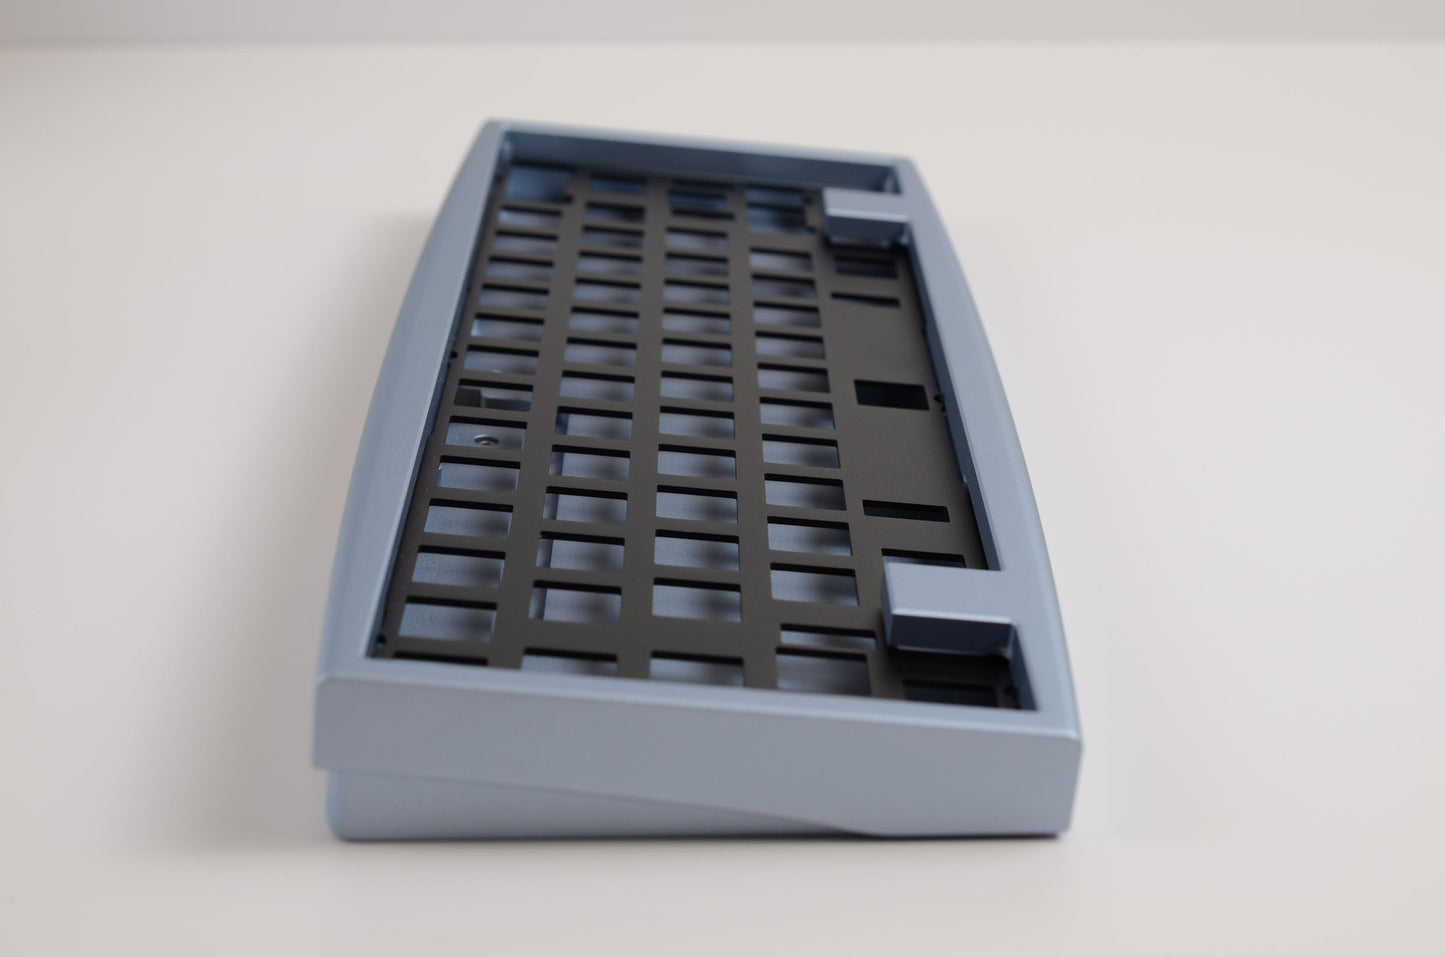 
                  
                    (In Stock) Ellipse Keyboard Kit
                  
                